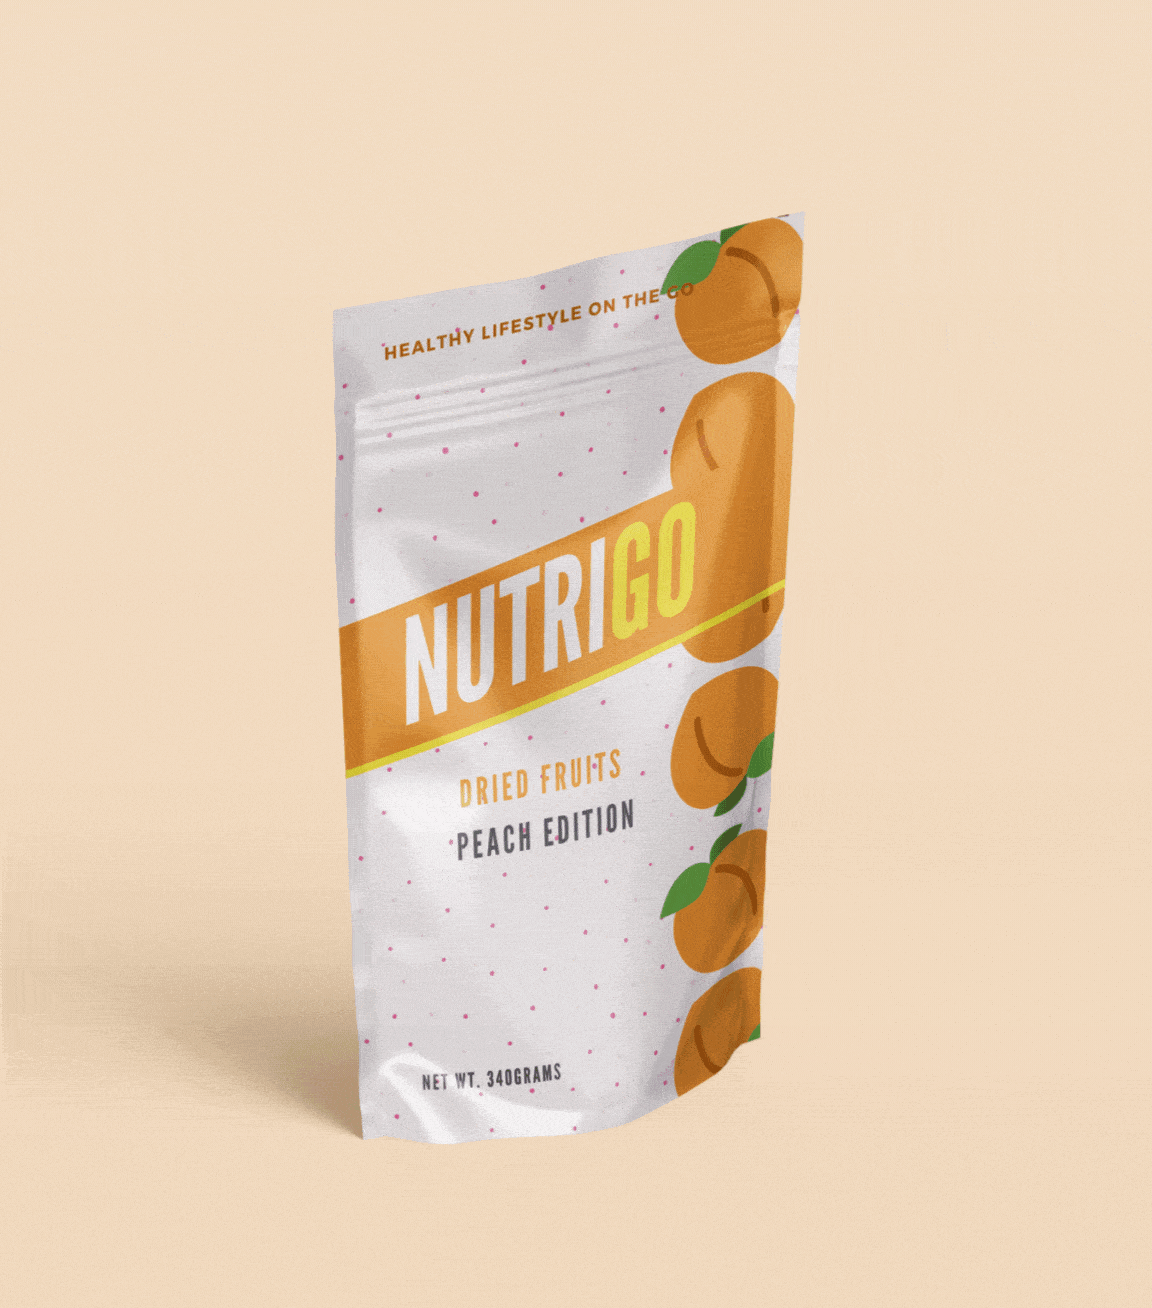 NutriGO Packaging Design